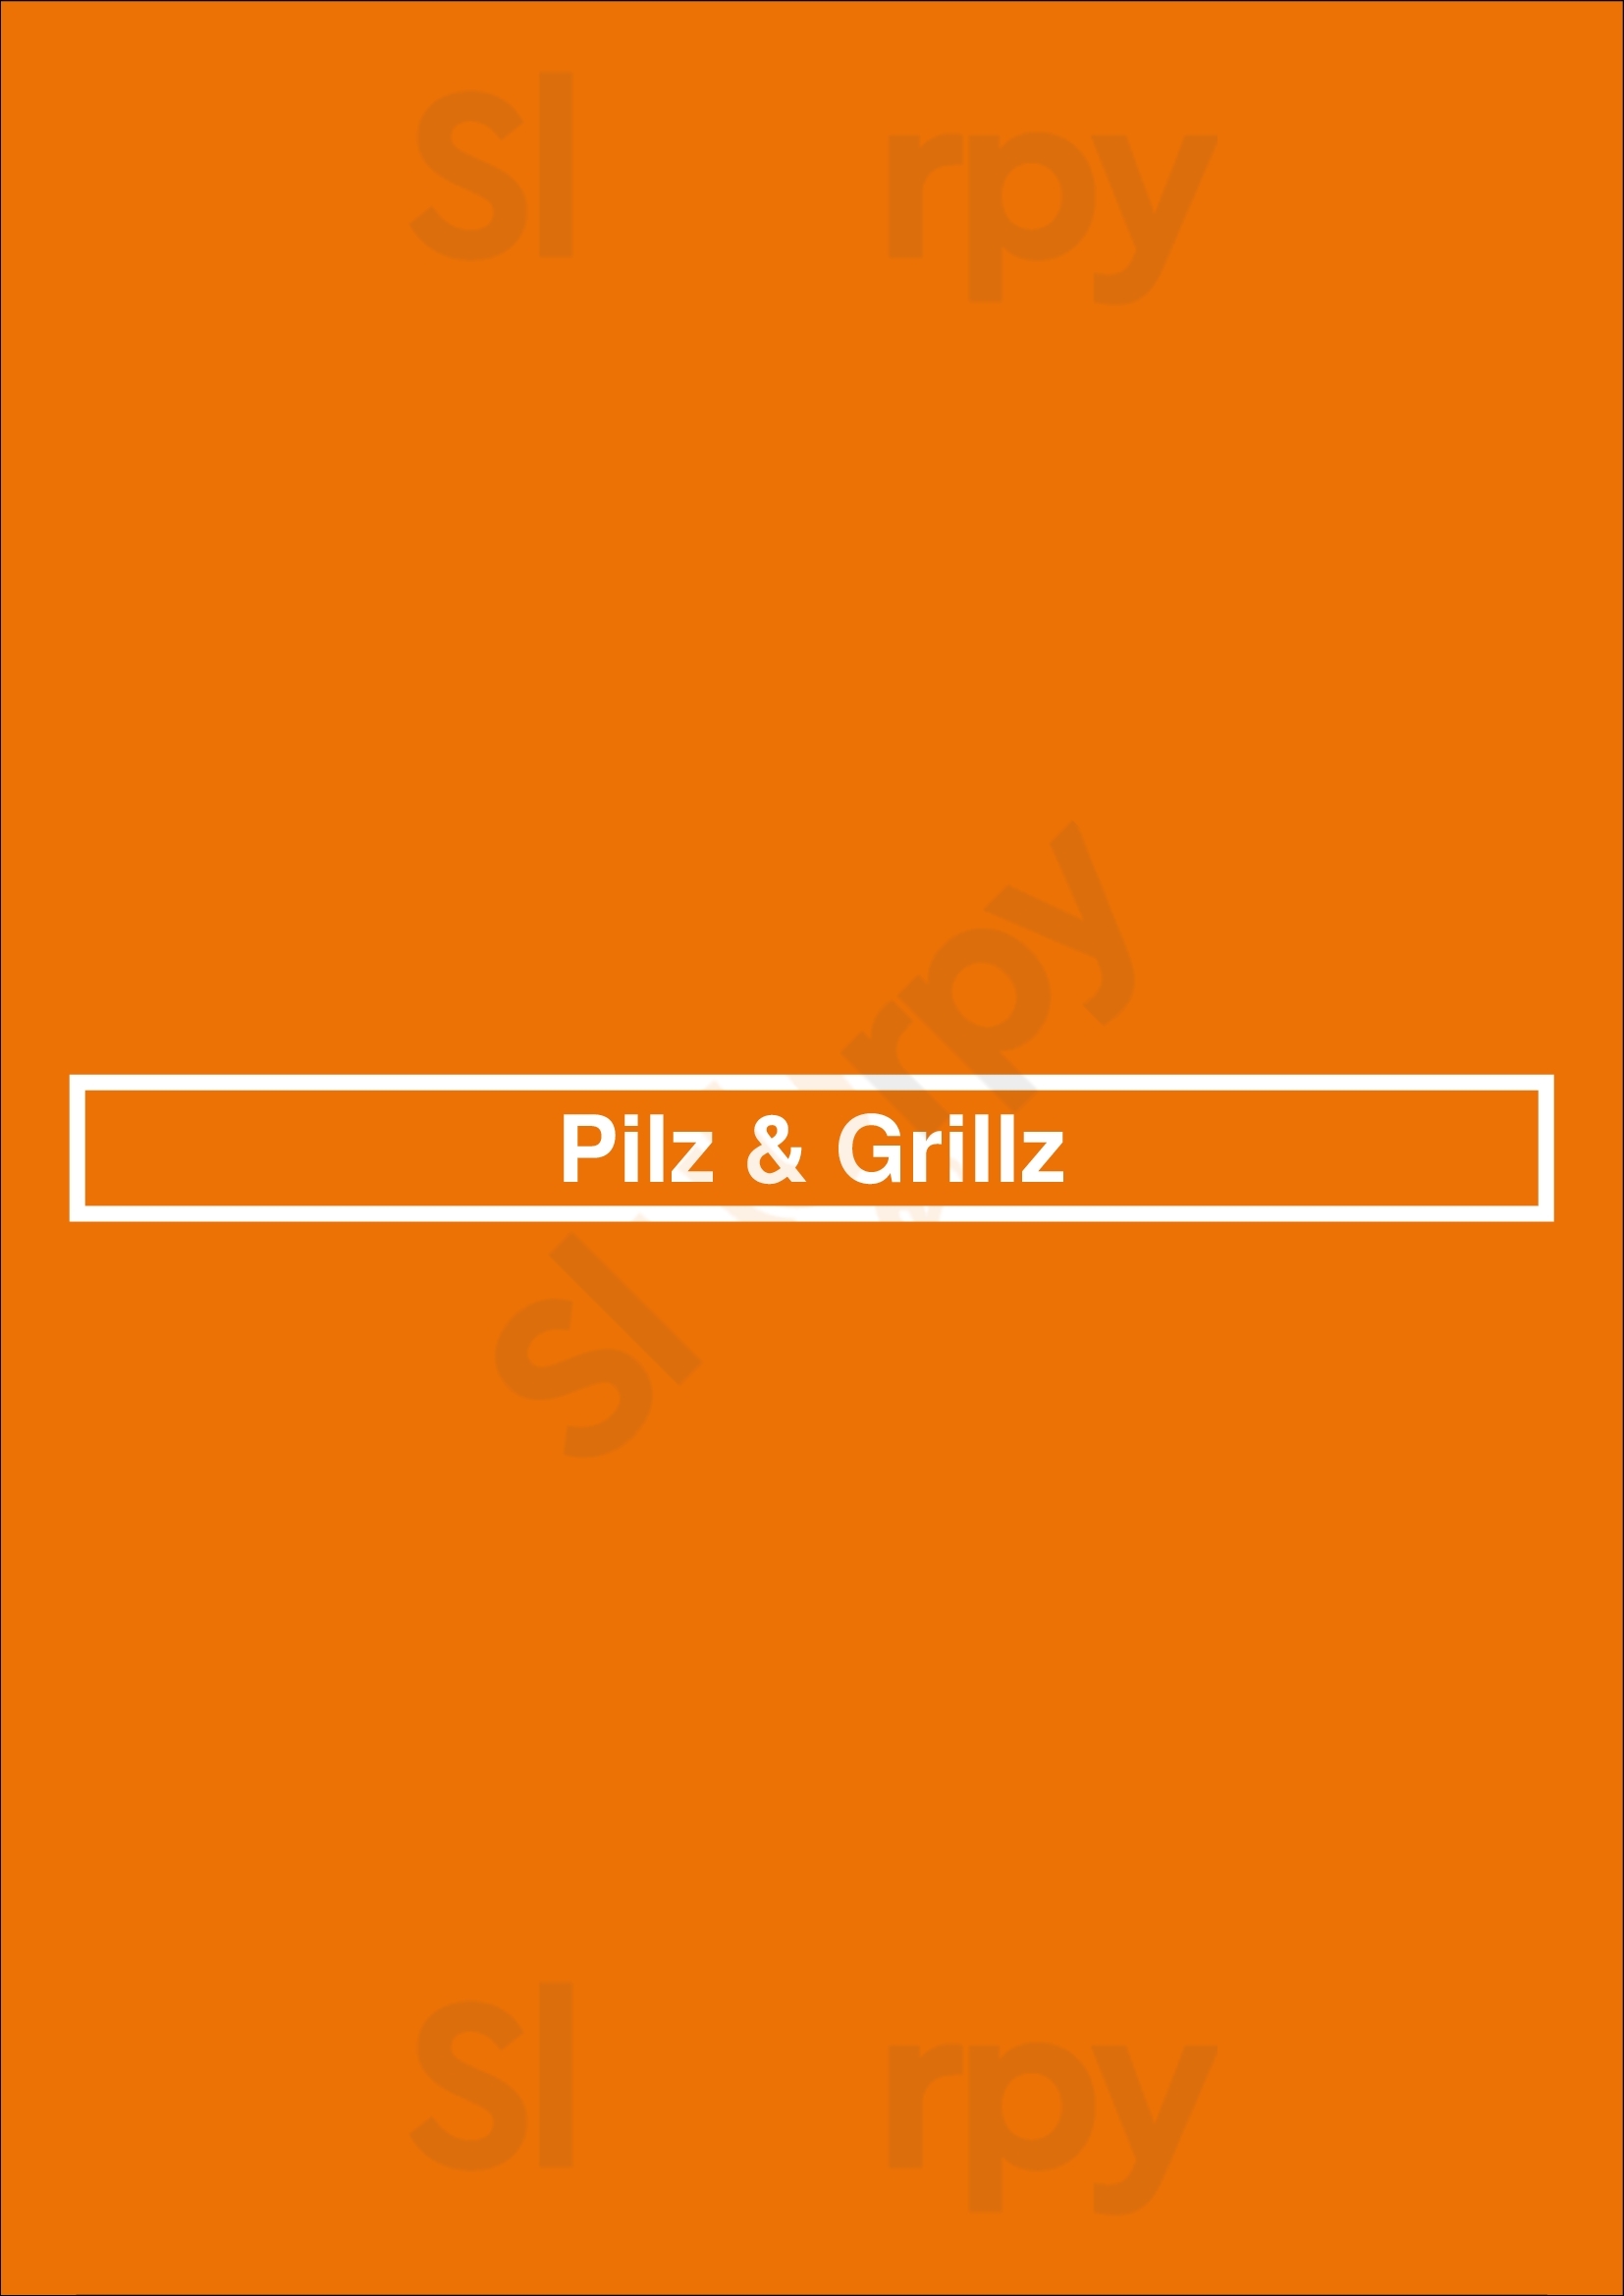 Pilz & Grillz Veghel Menu - 1